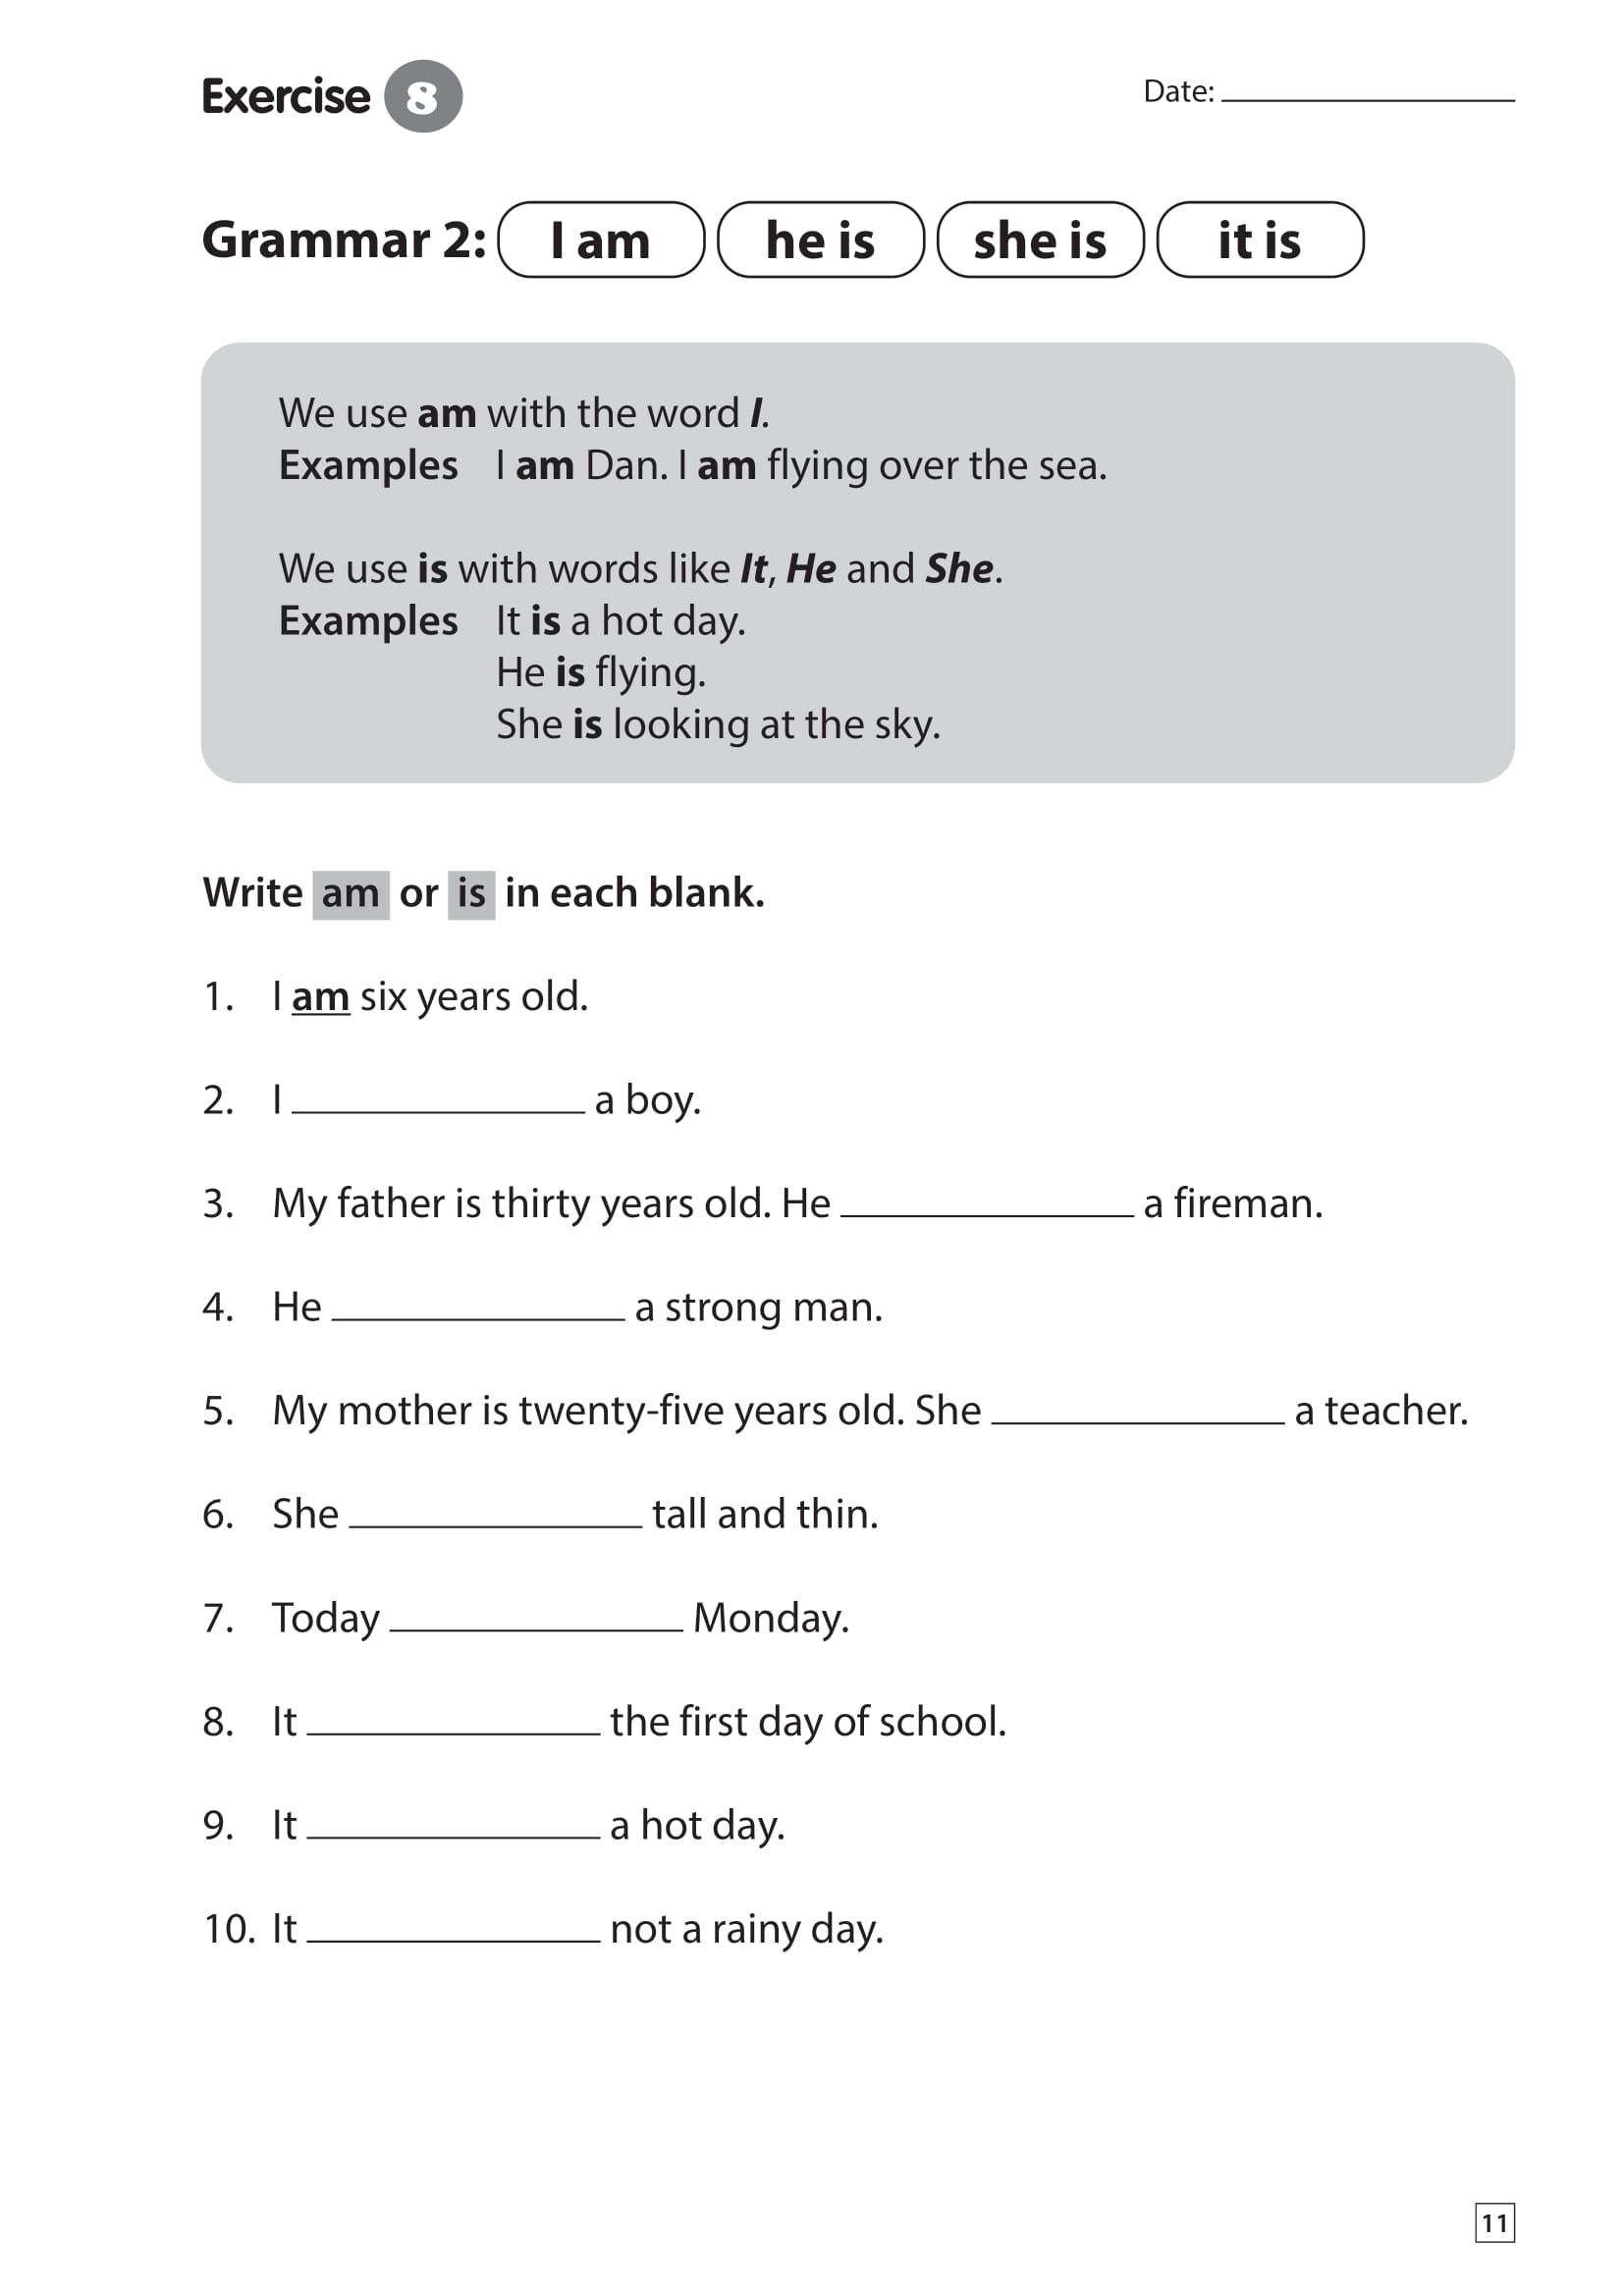 English For 11 Year Olds Worksheets Worksheets For Kindergarten